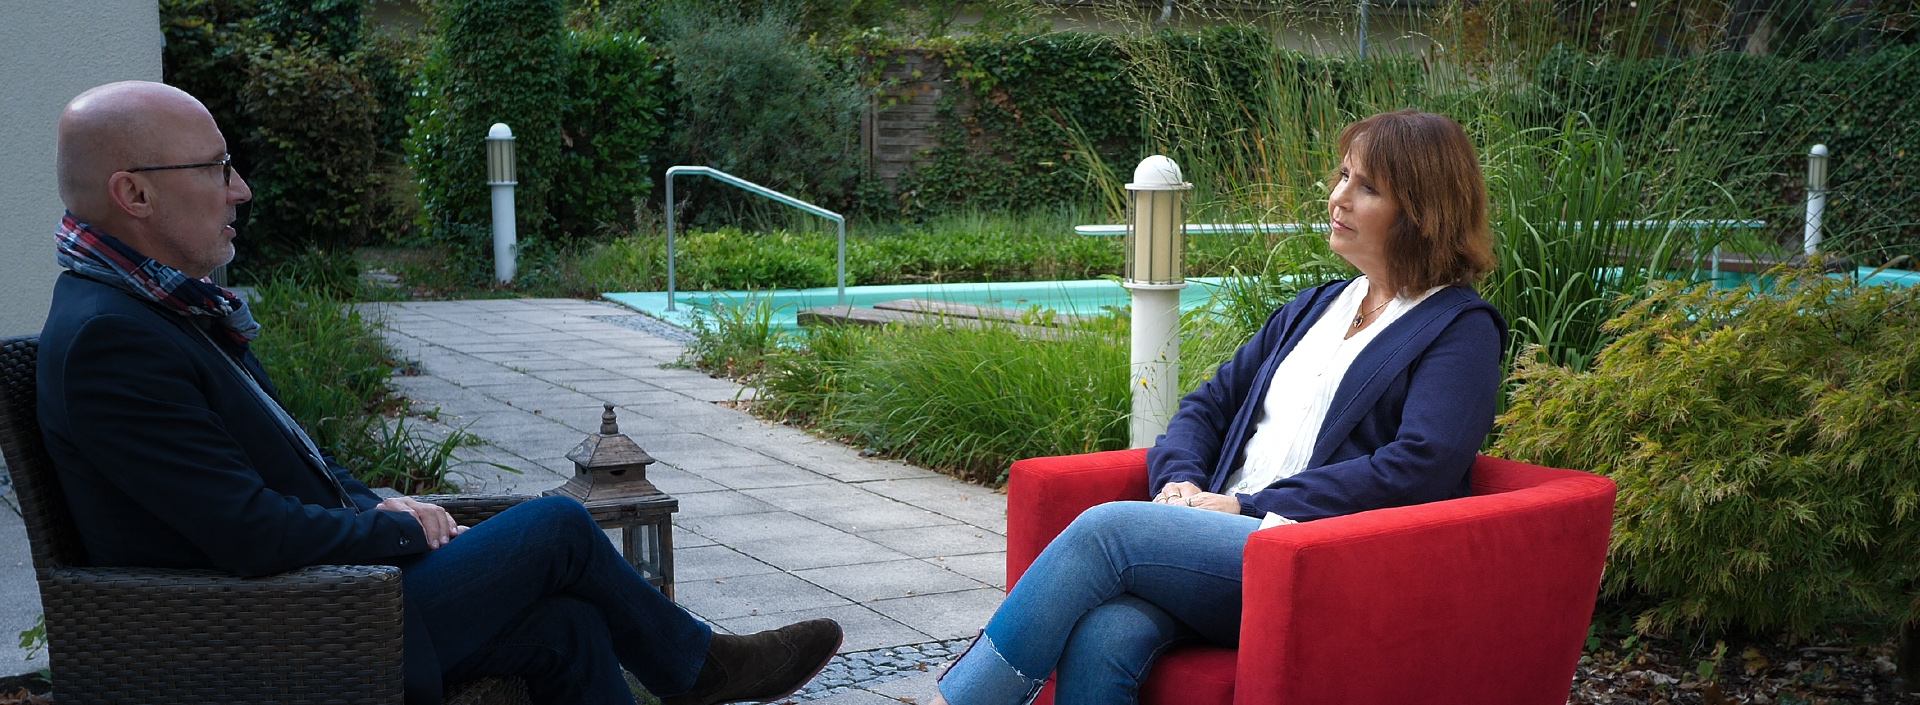 Monika Cramer sitzt in einer Grünanlage im Roten Sessel für ein Interview